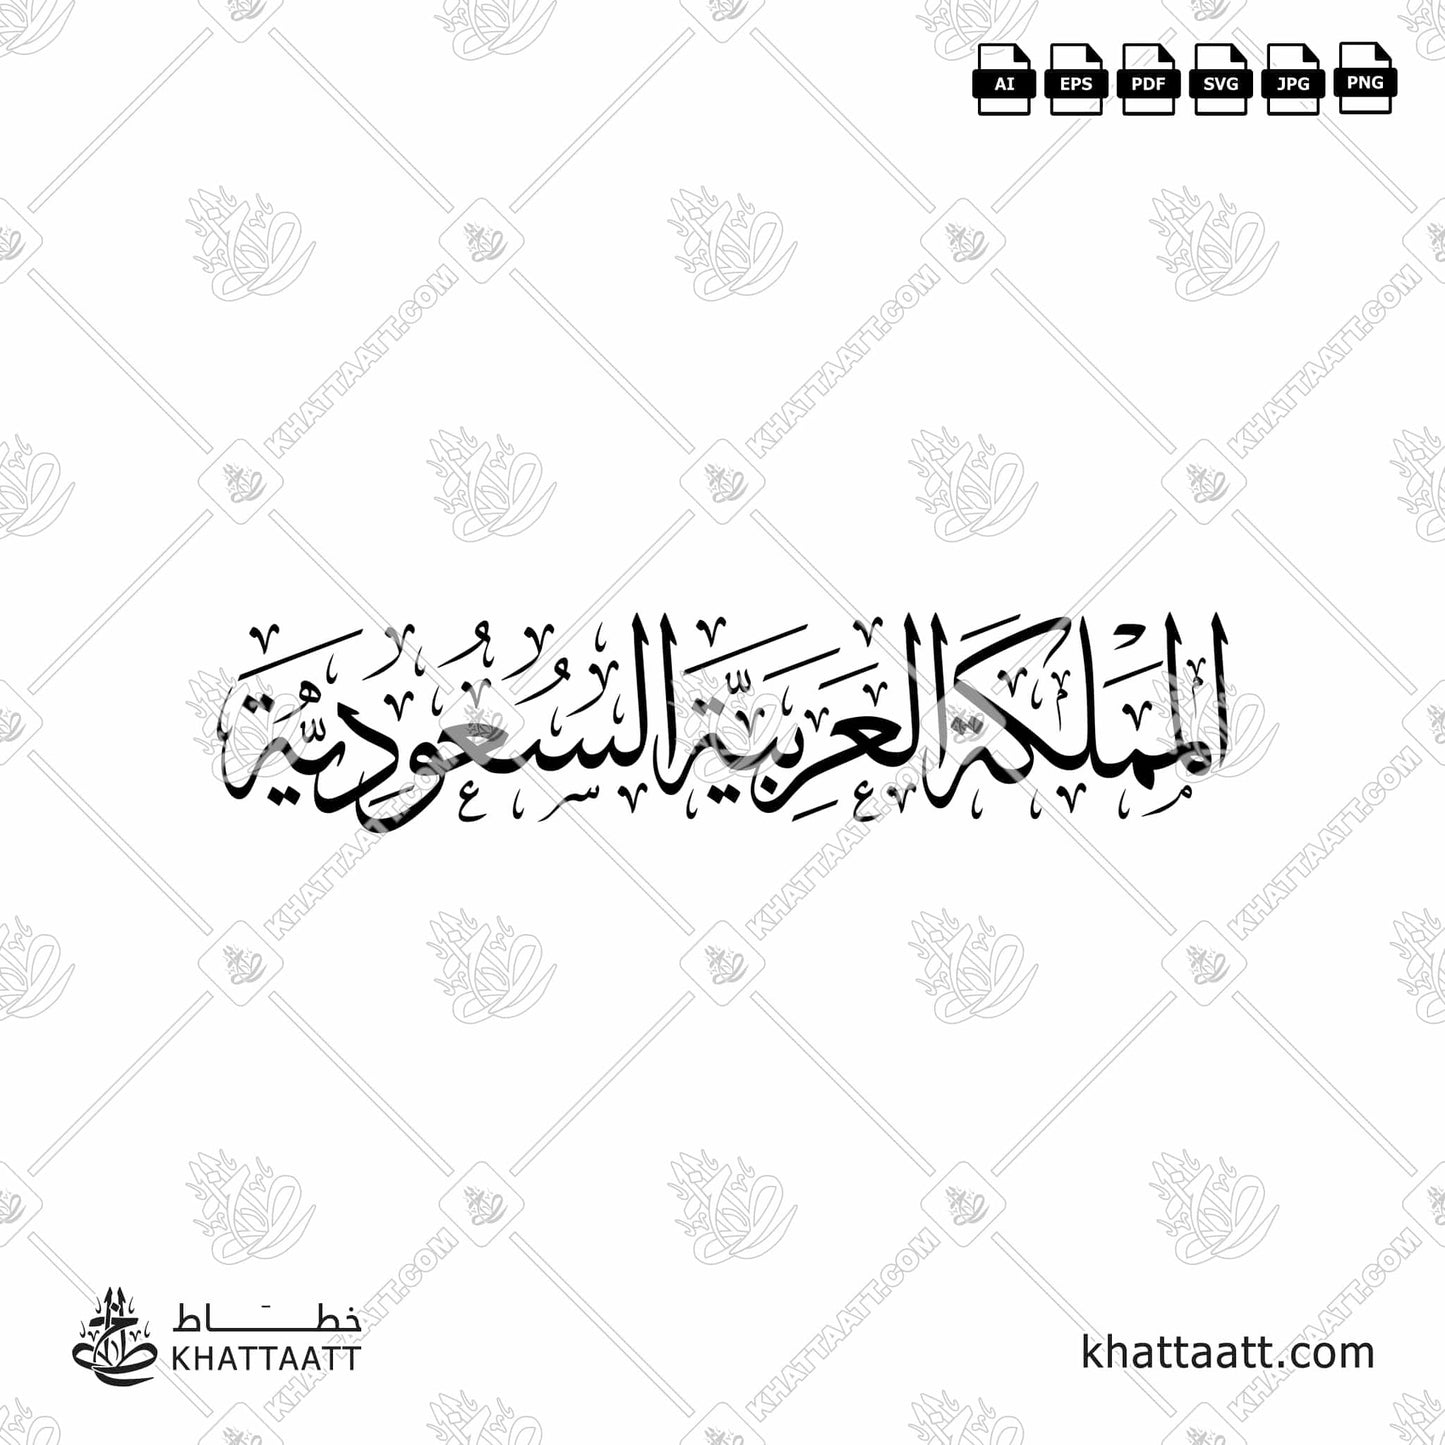 Arabic Calligraphy of the Kingdom of Saudi Arabia (KSA) المملكة العربية السعودية in Thuluth Script خط الثلث.